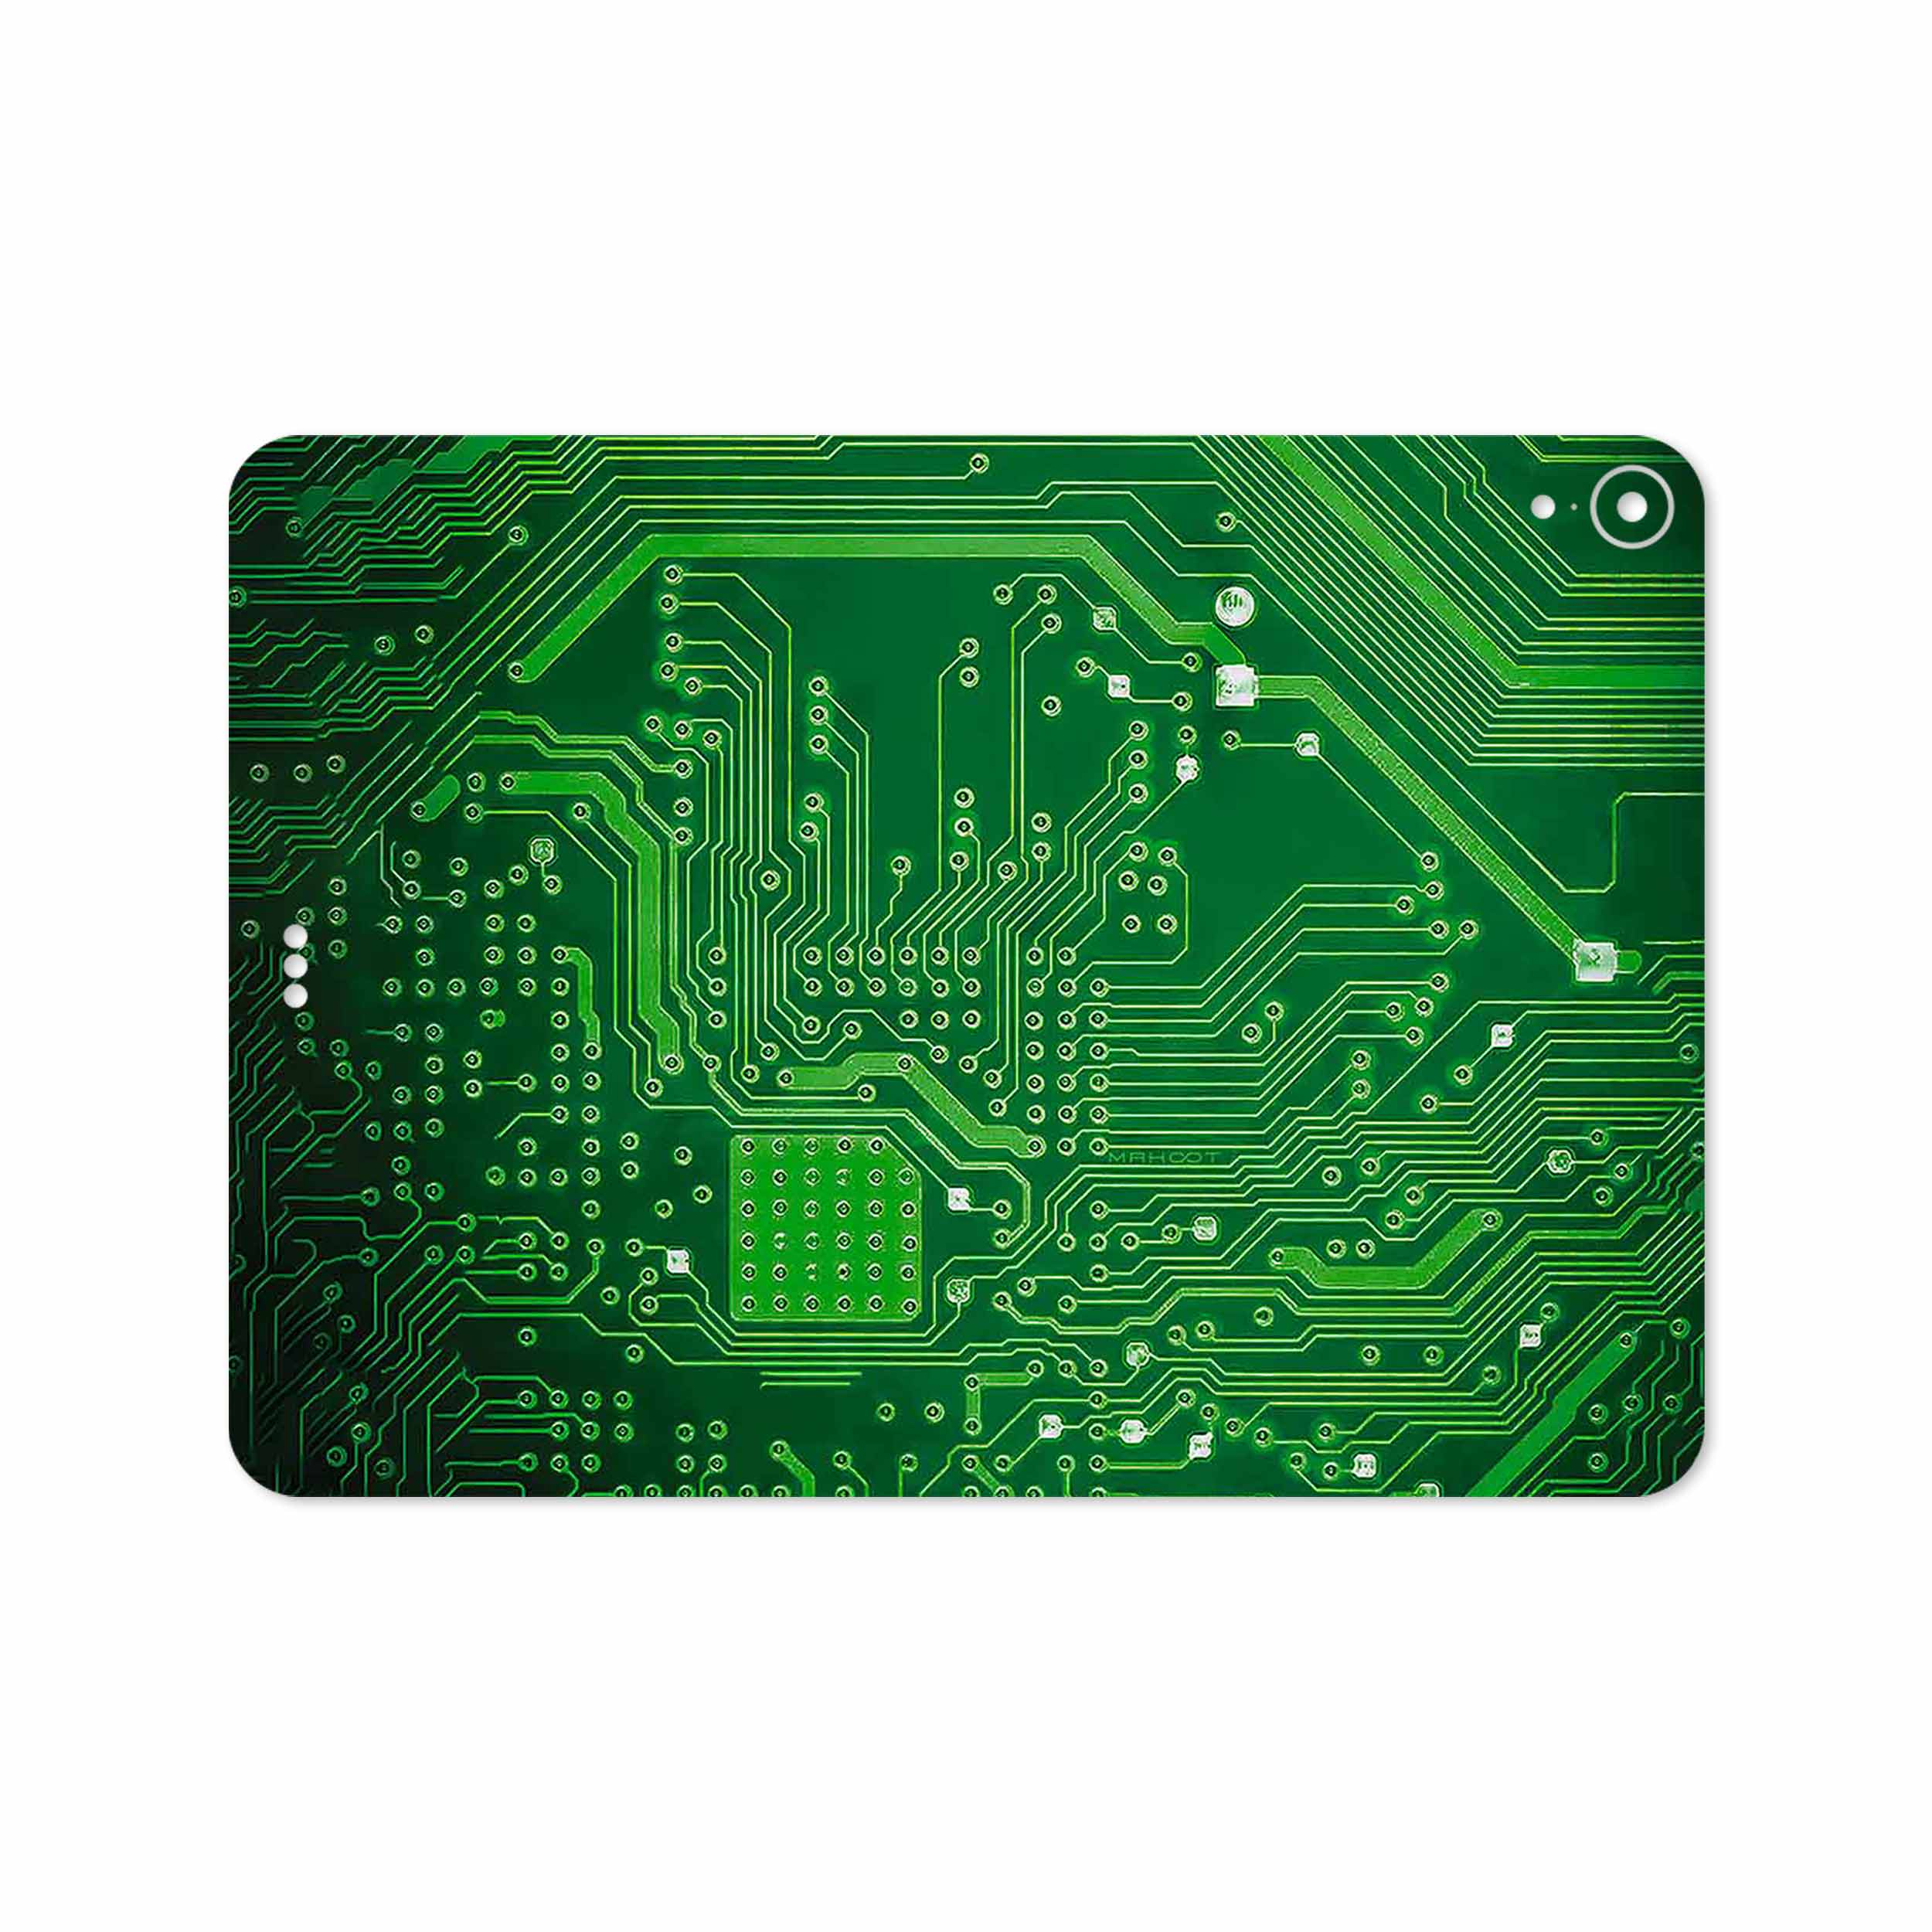 برچسب پوششی ماهوت مدل Green Printed Circuit Board مناسب برای تبلت اپل iPad Pro 11 2018 A1934